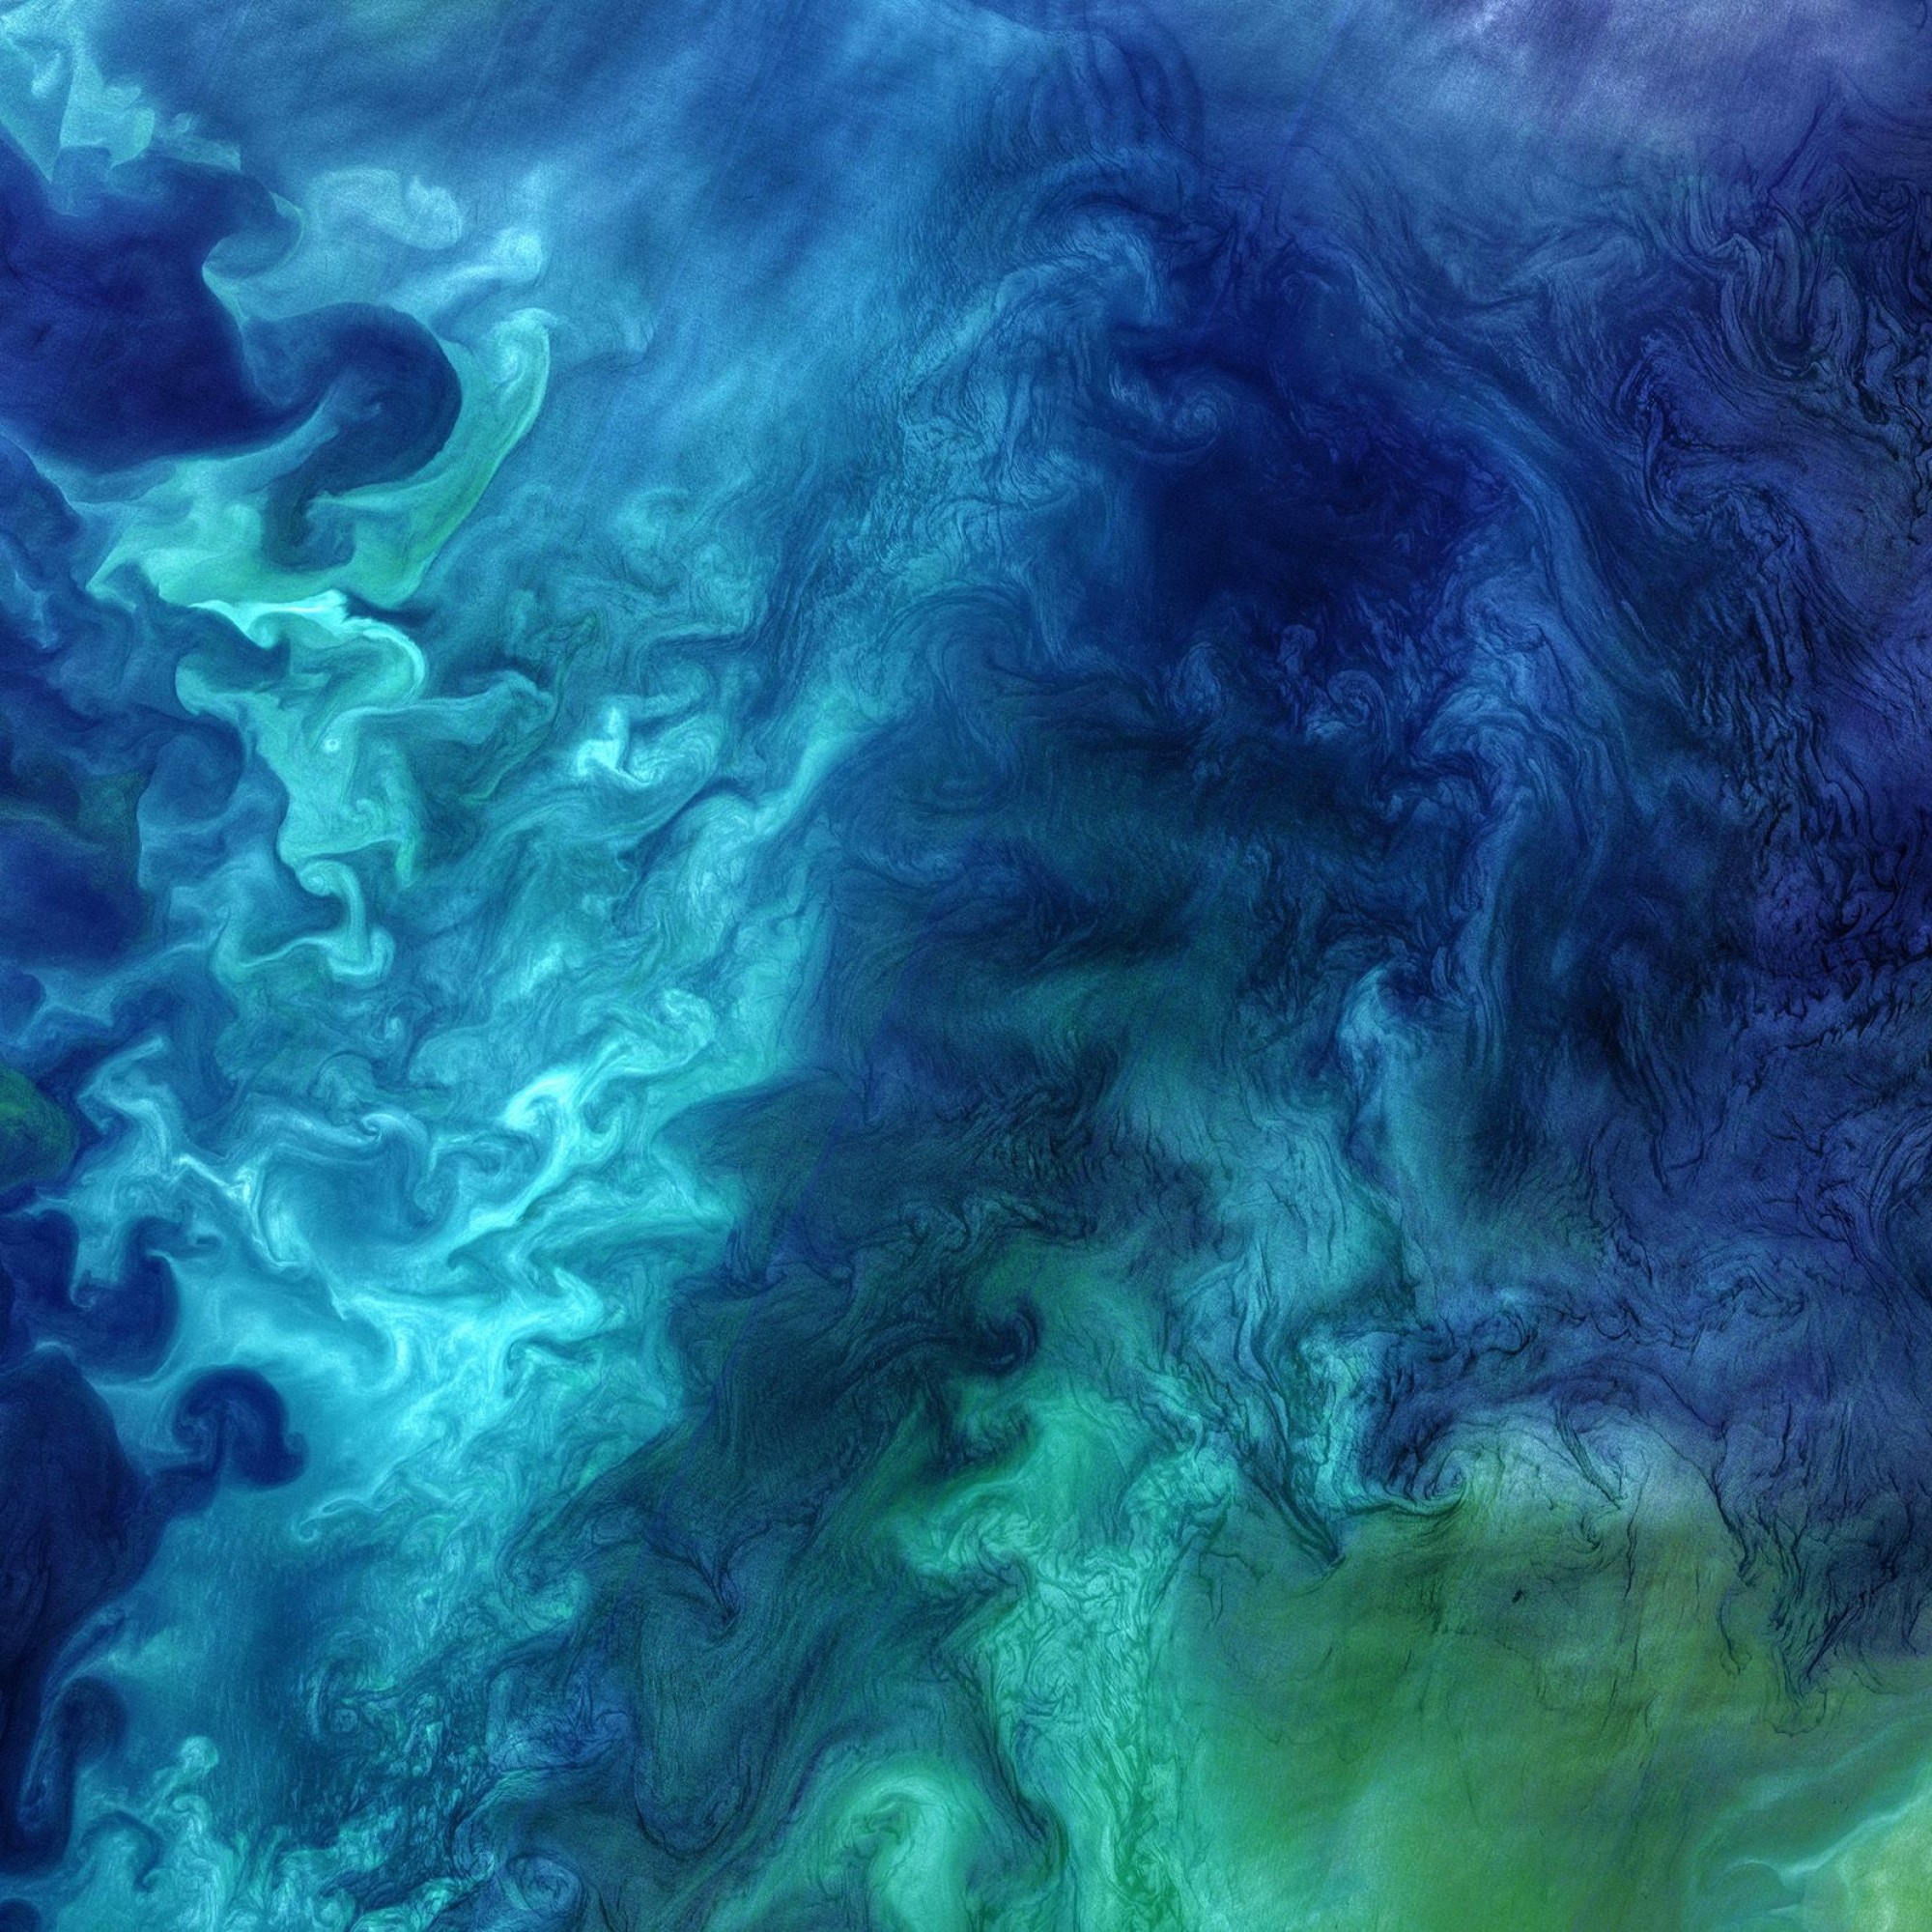 Blaualgen in der Tschuktschen-See. (Aufnahme aus dem Orbit)